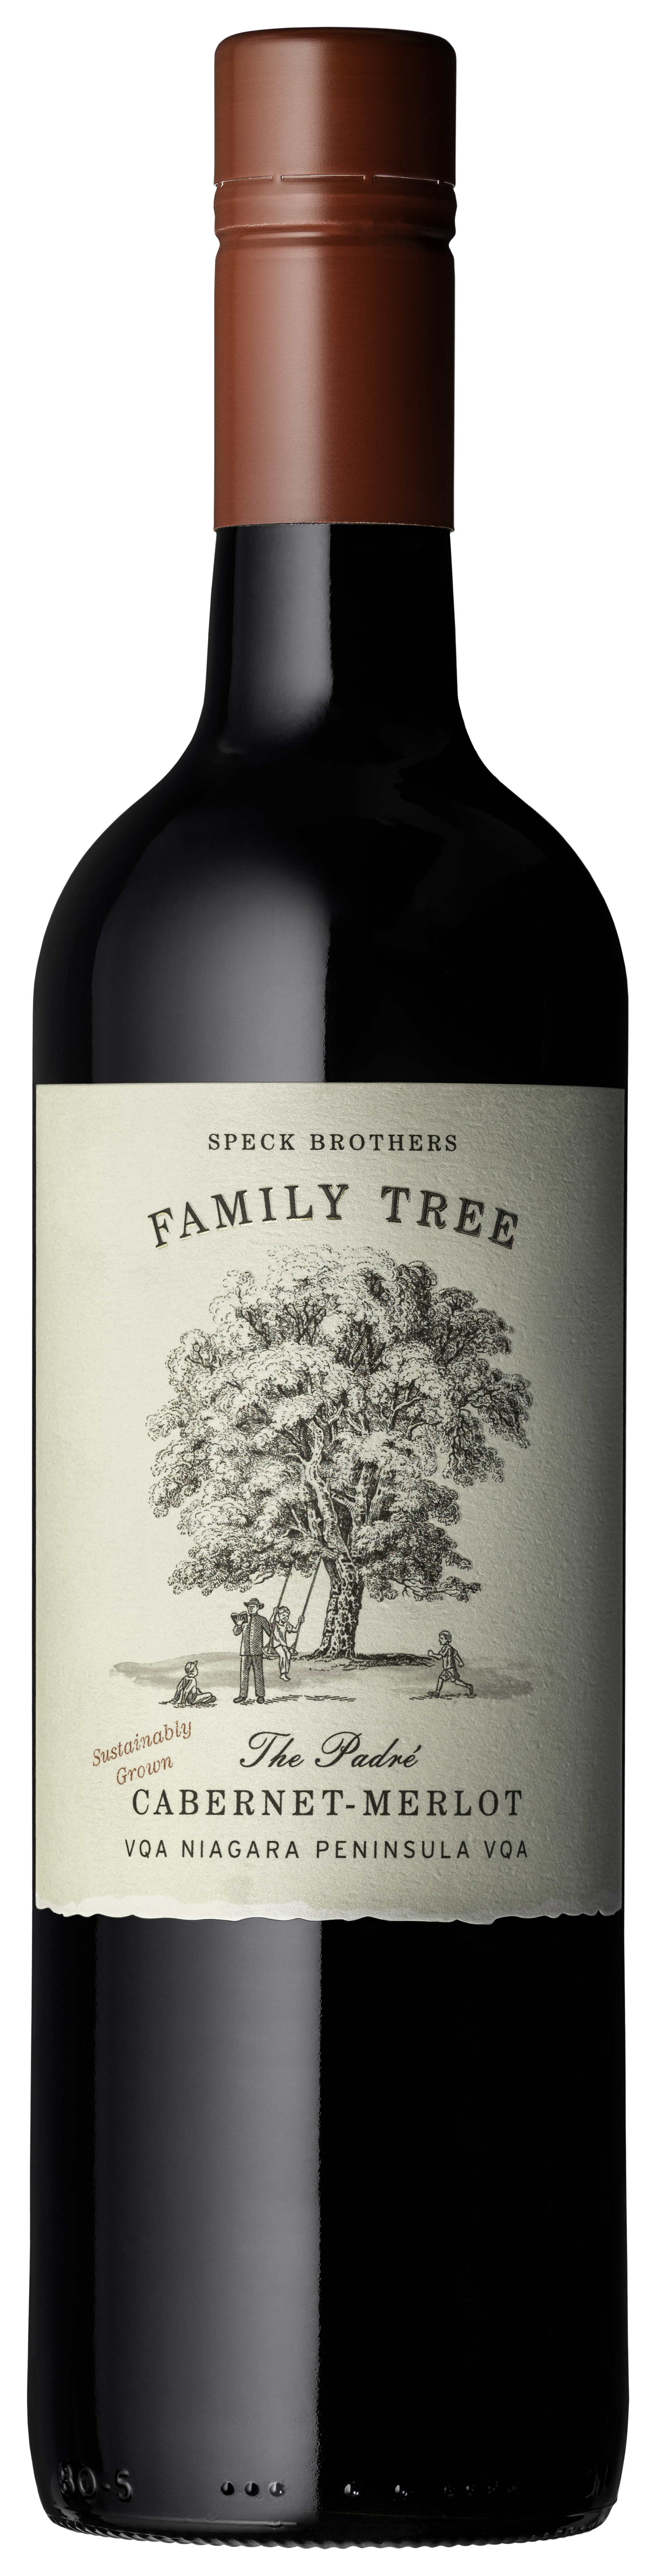 Speck Bros. Family Tree The Padré Cabernet/Merlot 2020, VQA Niagara Peninsula